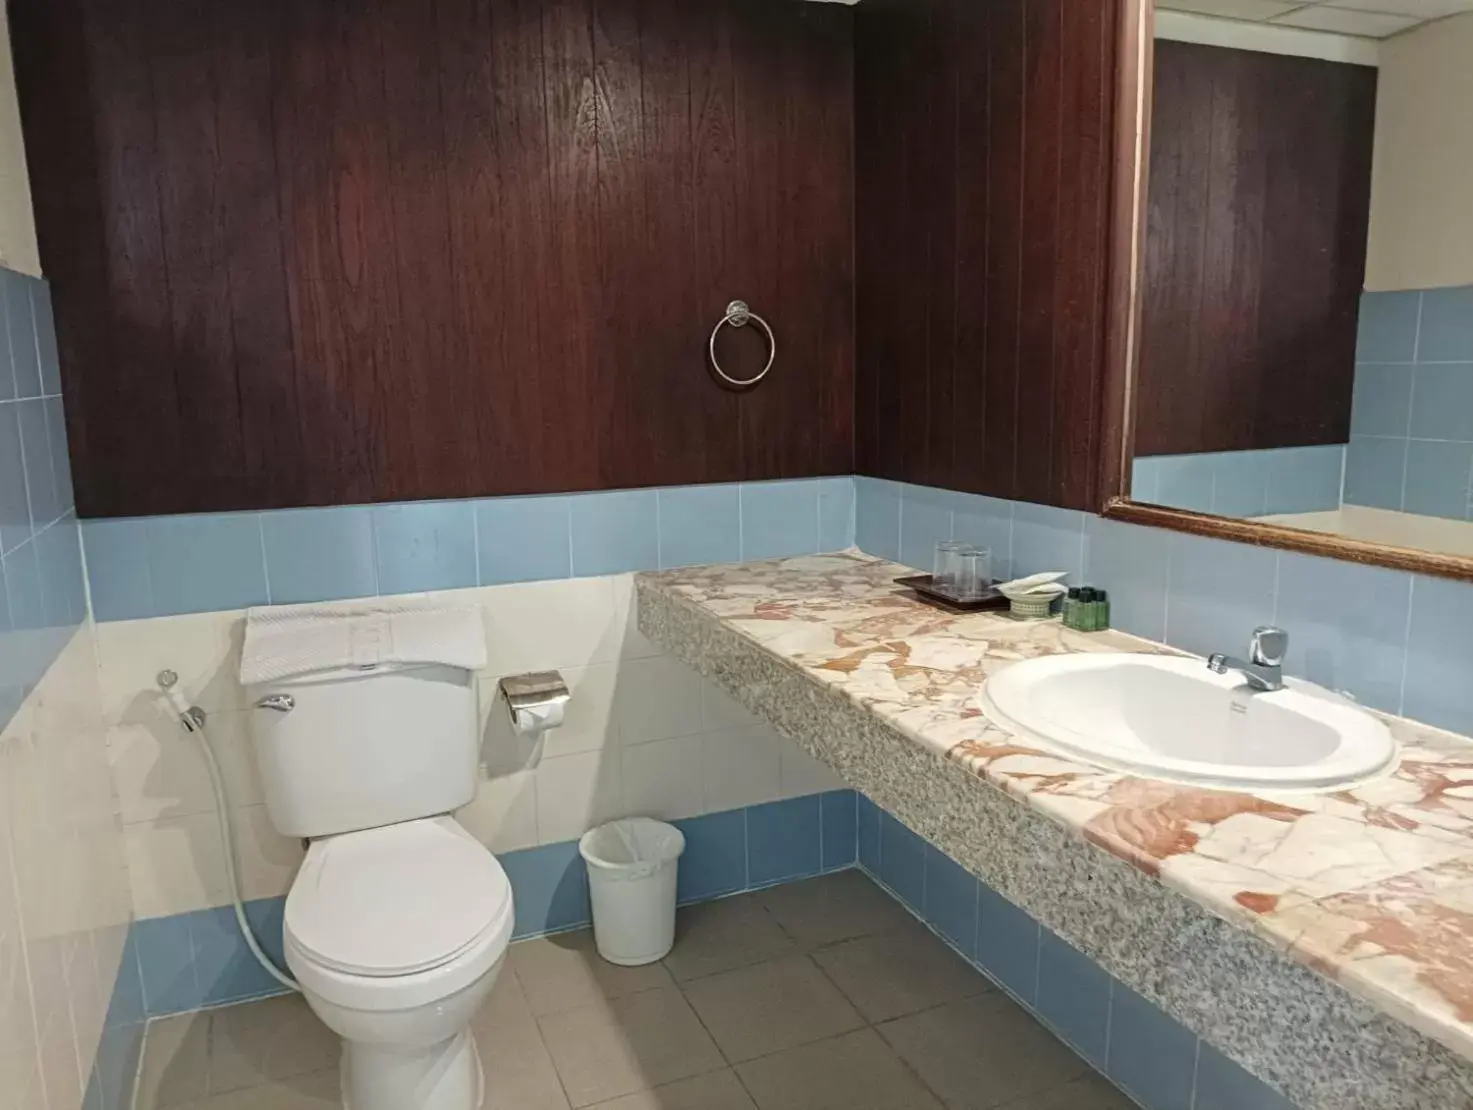 Bathroom in Royal Peninsula Hotel Chiangmai